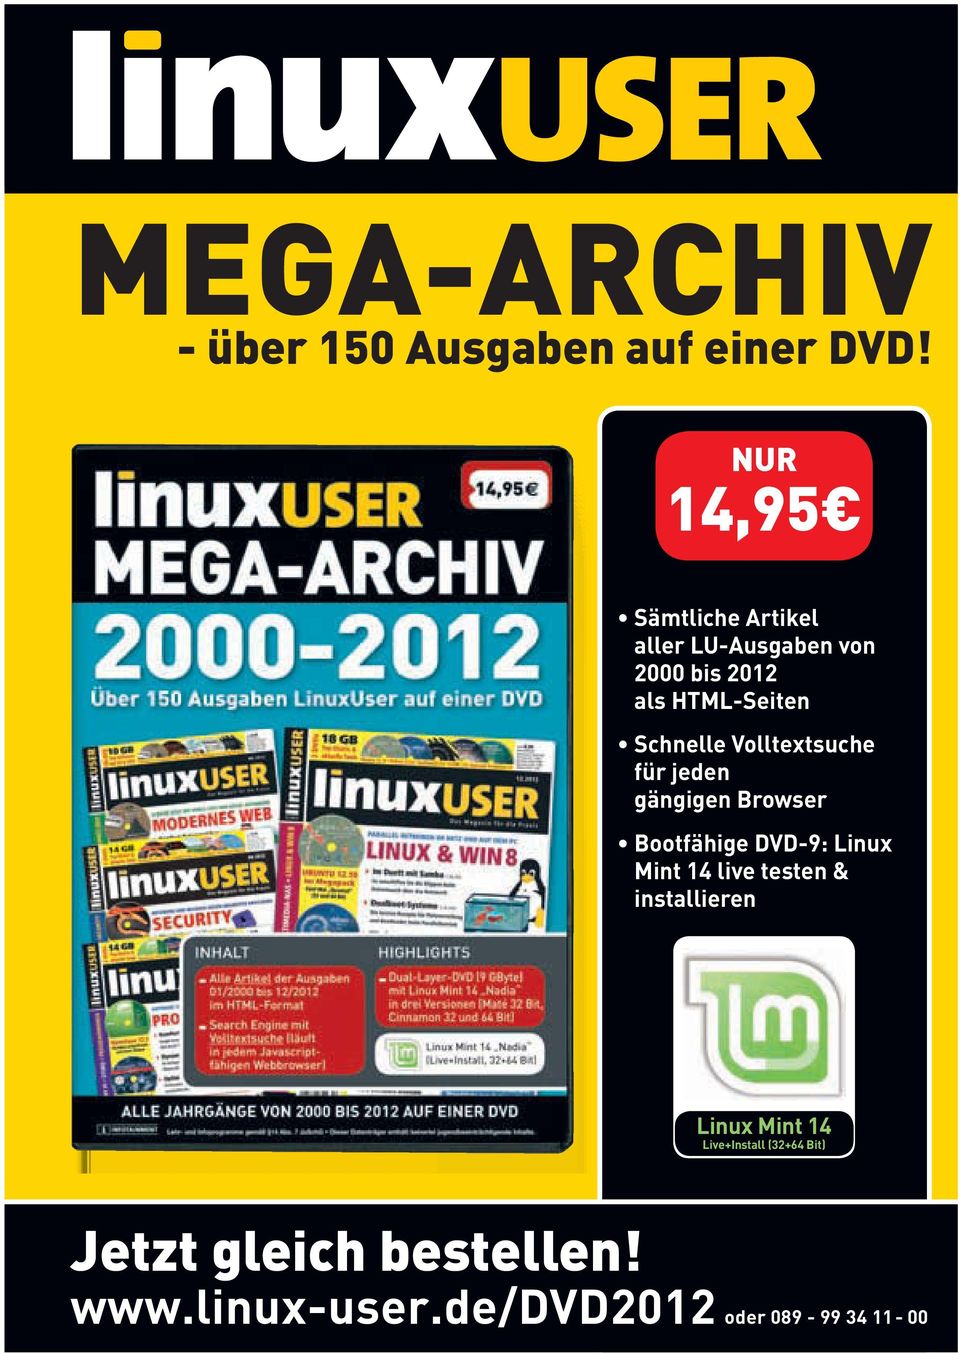 Schnelle Volltextsuche für jeden gängigen Browser Bootfähige DVD-9: Linux Mint 14 live